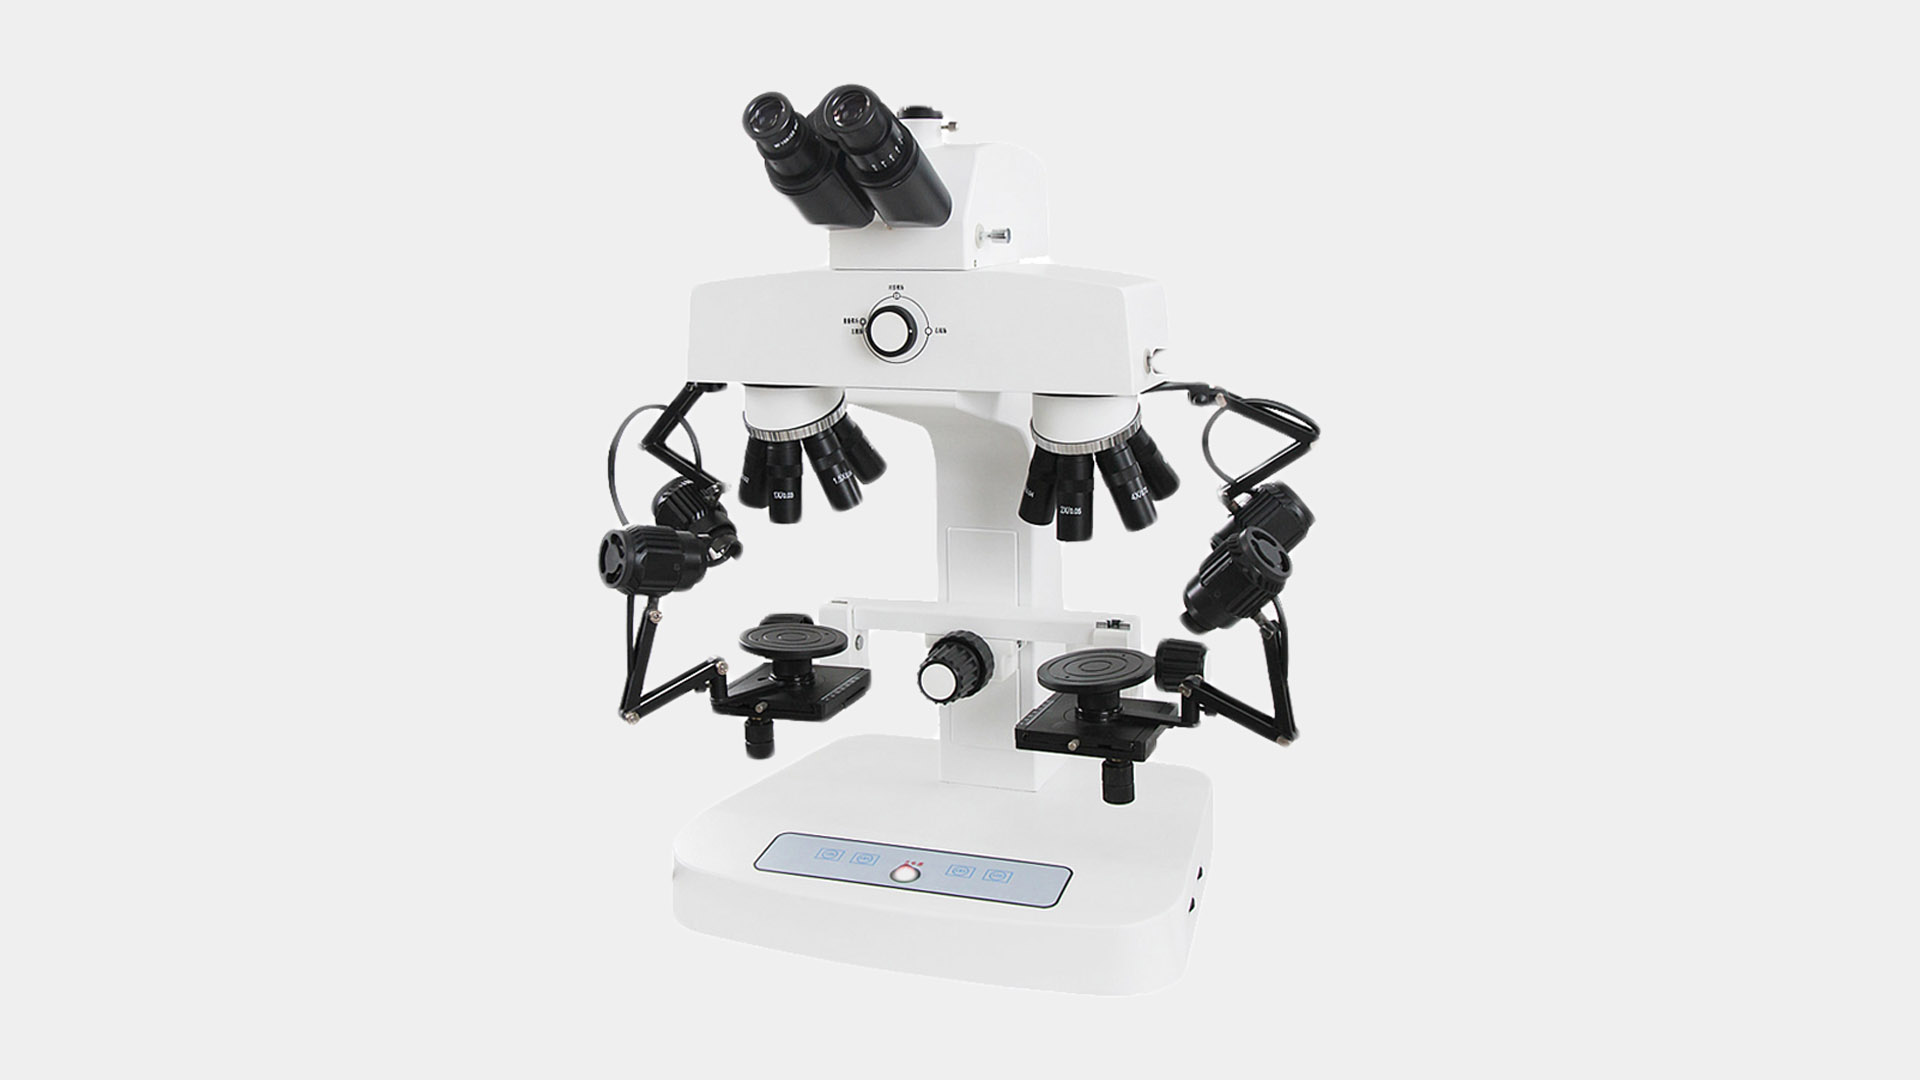 A11.1524 Microscopio monocular para estudiantes, cuerpo metálico, enfoque grueso